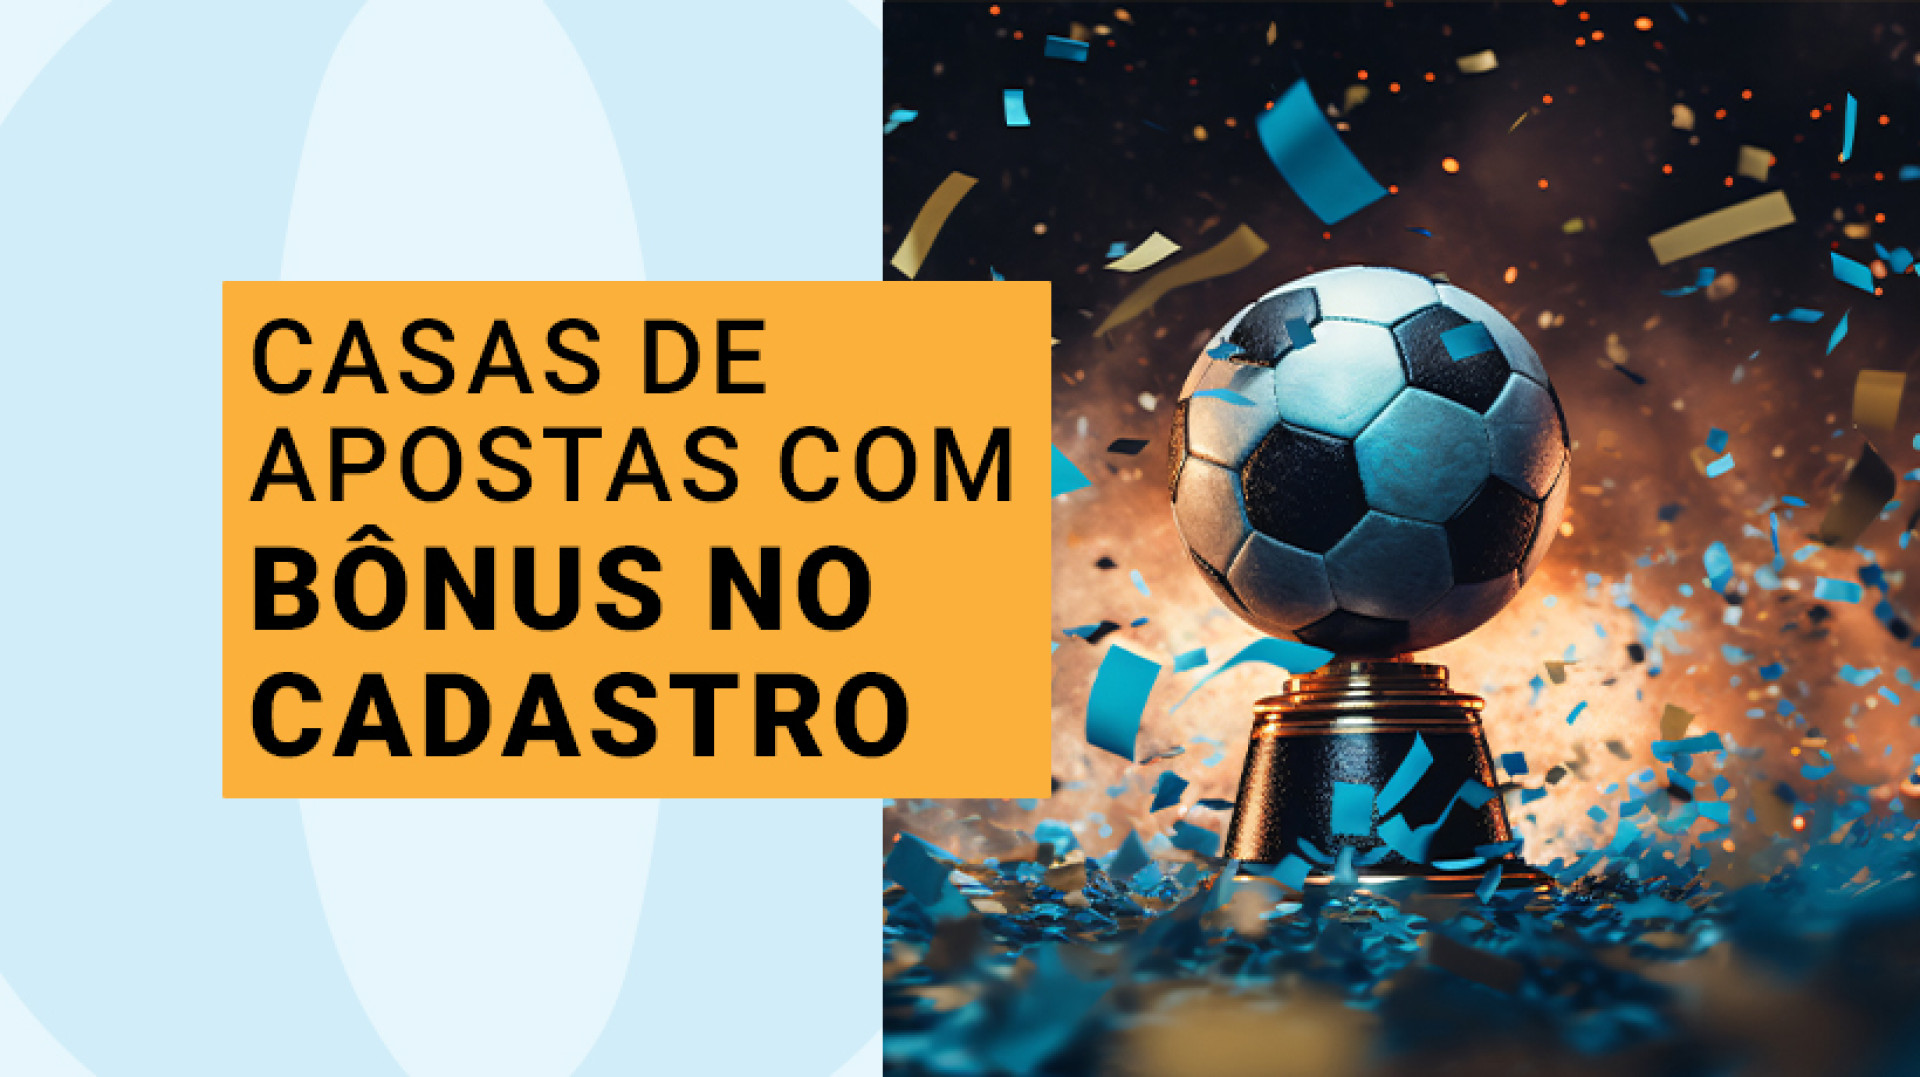 Lista atualizada de plataformas de apostas com bônus no cadastro para novos usuários brasileiros, sites confiáveis que pagam de verdade